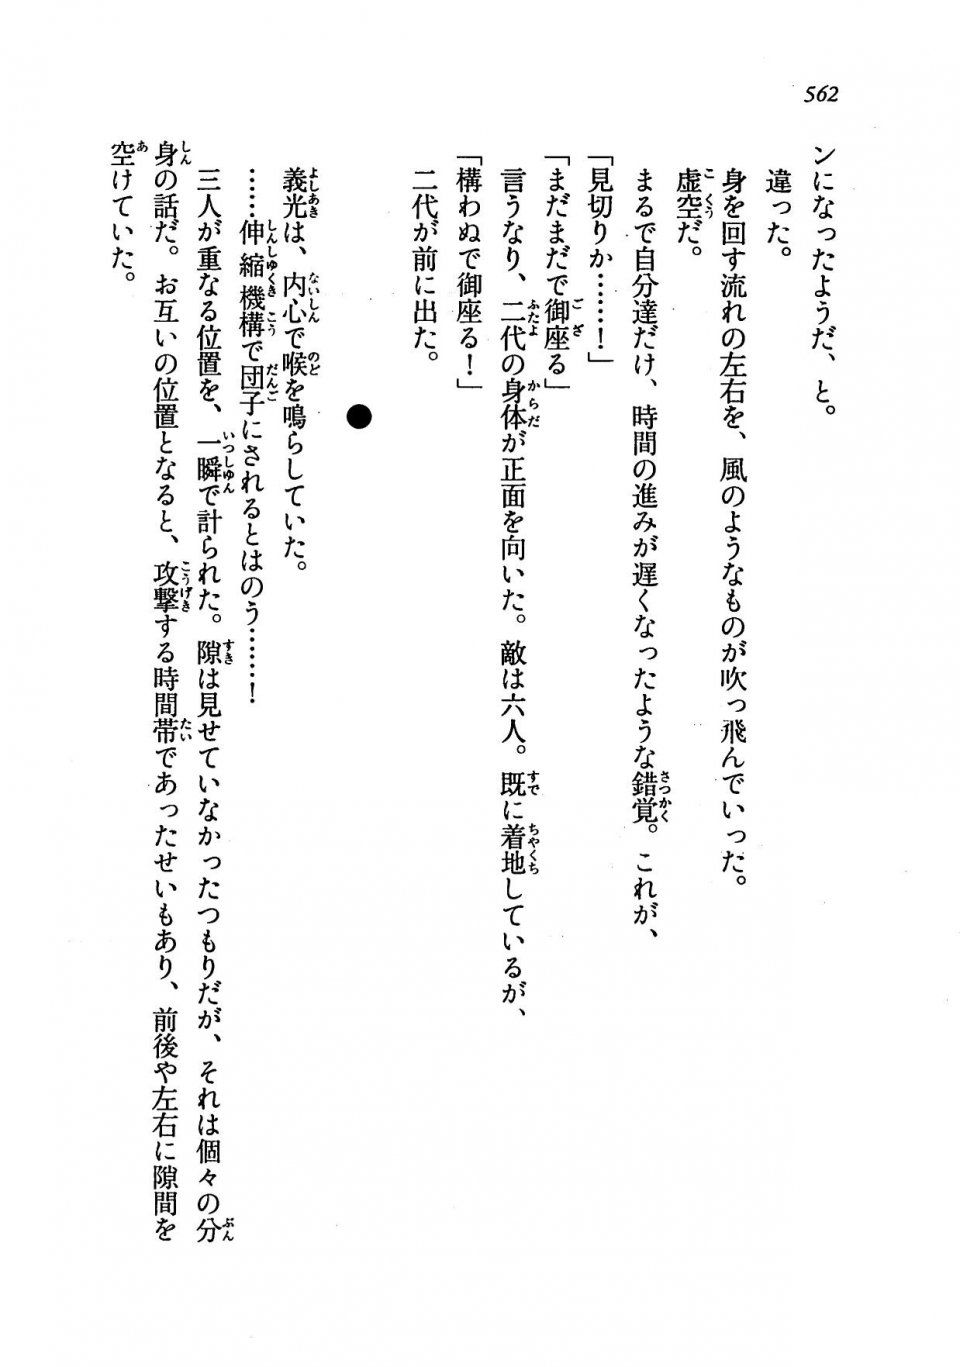 Kyoukai Senjou no Horizon LN Vol 19(8A) - Photo #562